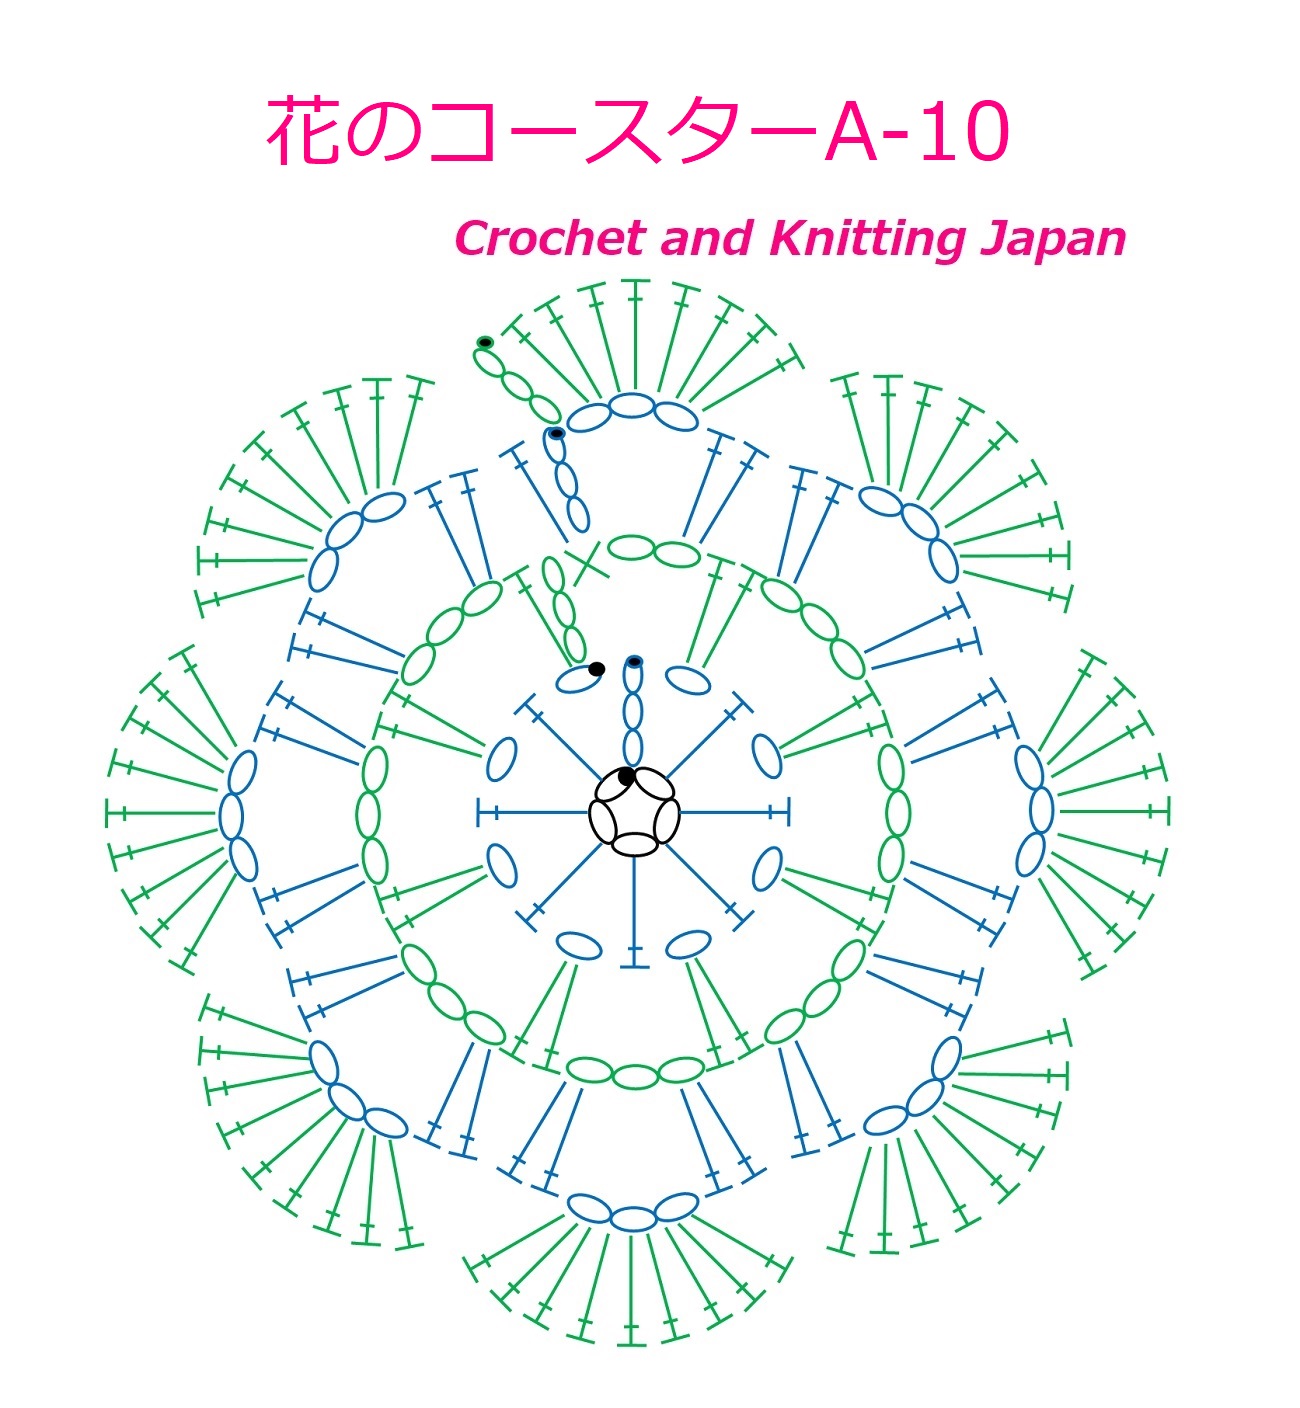 かぎ編み Crochet Japan クロッシェジャパン 花のコースターa 10 かぎ針編み 編み図 字幕解説 Crochet Flower Coaster Crochet And Knitting Japan